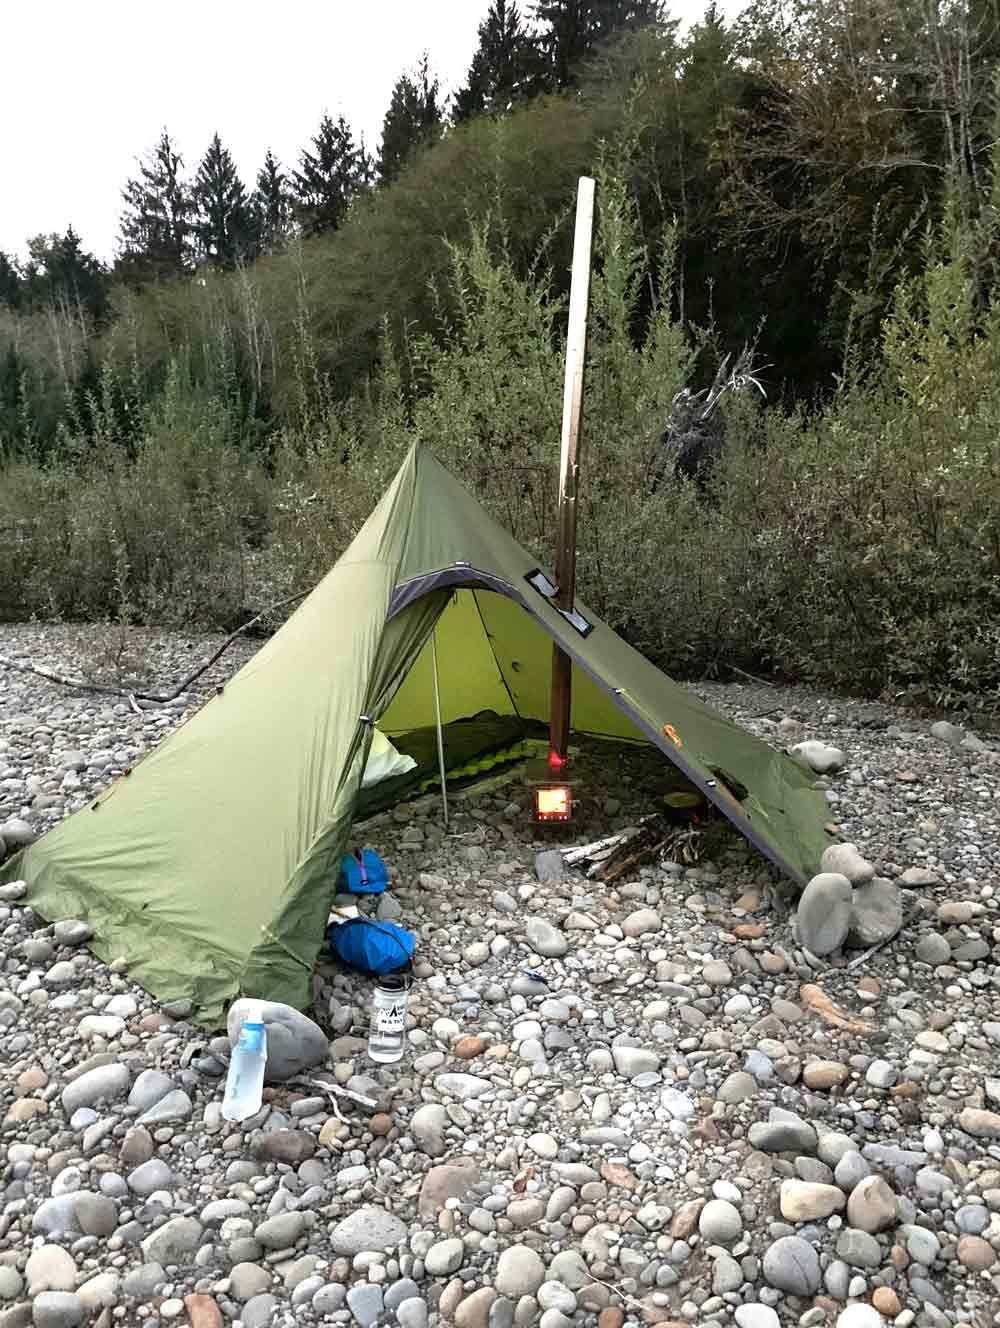 Stave camping. Бушкрафт кемпинг. Hexpeak XL Tipi палатка. Поход с палатками. Кемпинговое снаряжение.